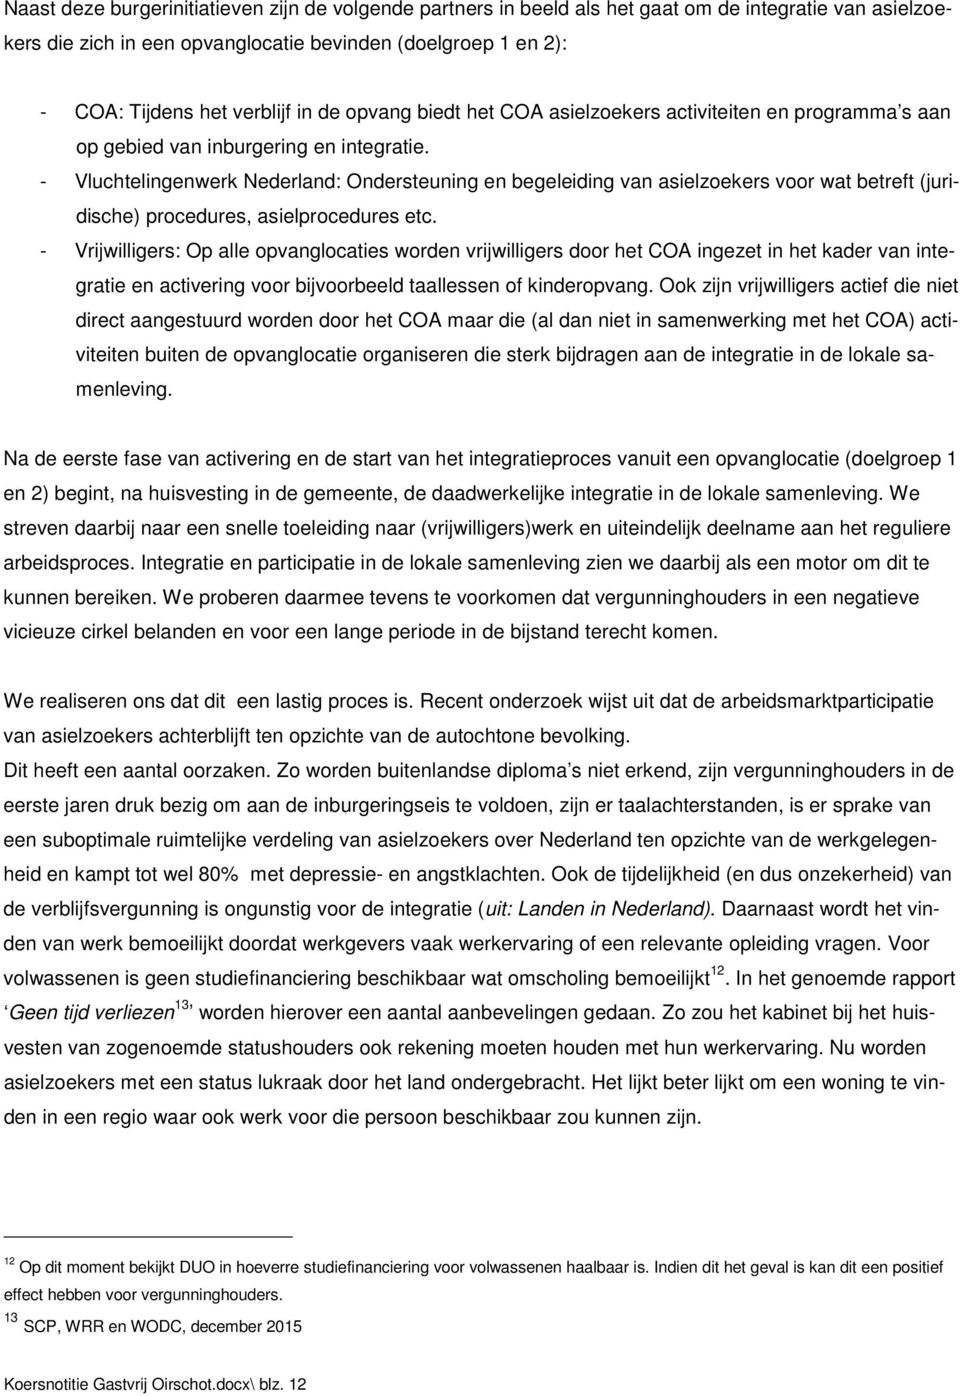 - Vluchtelingenwerk Nederland: Ondersteuning en begeleiding van asielzoekers voor wat betreft (juridische) procedures, asielprocedures etc.